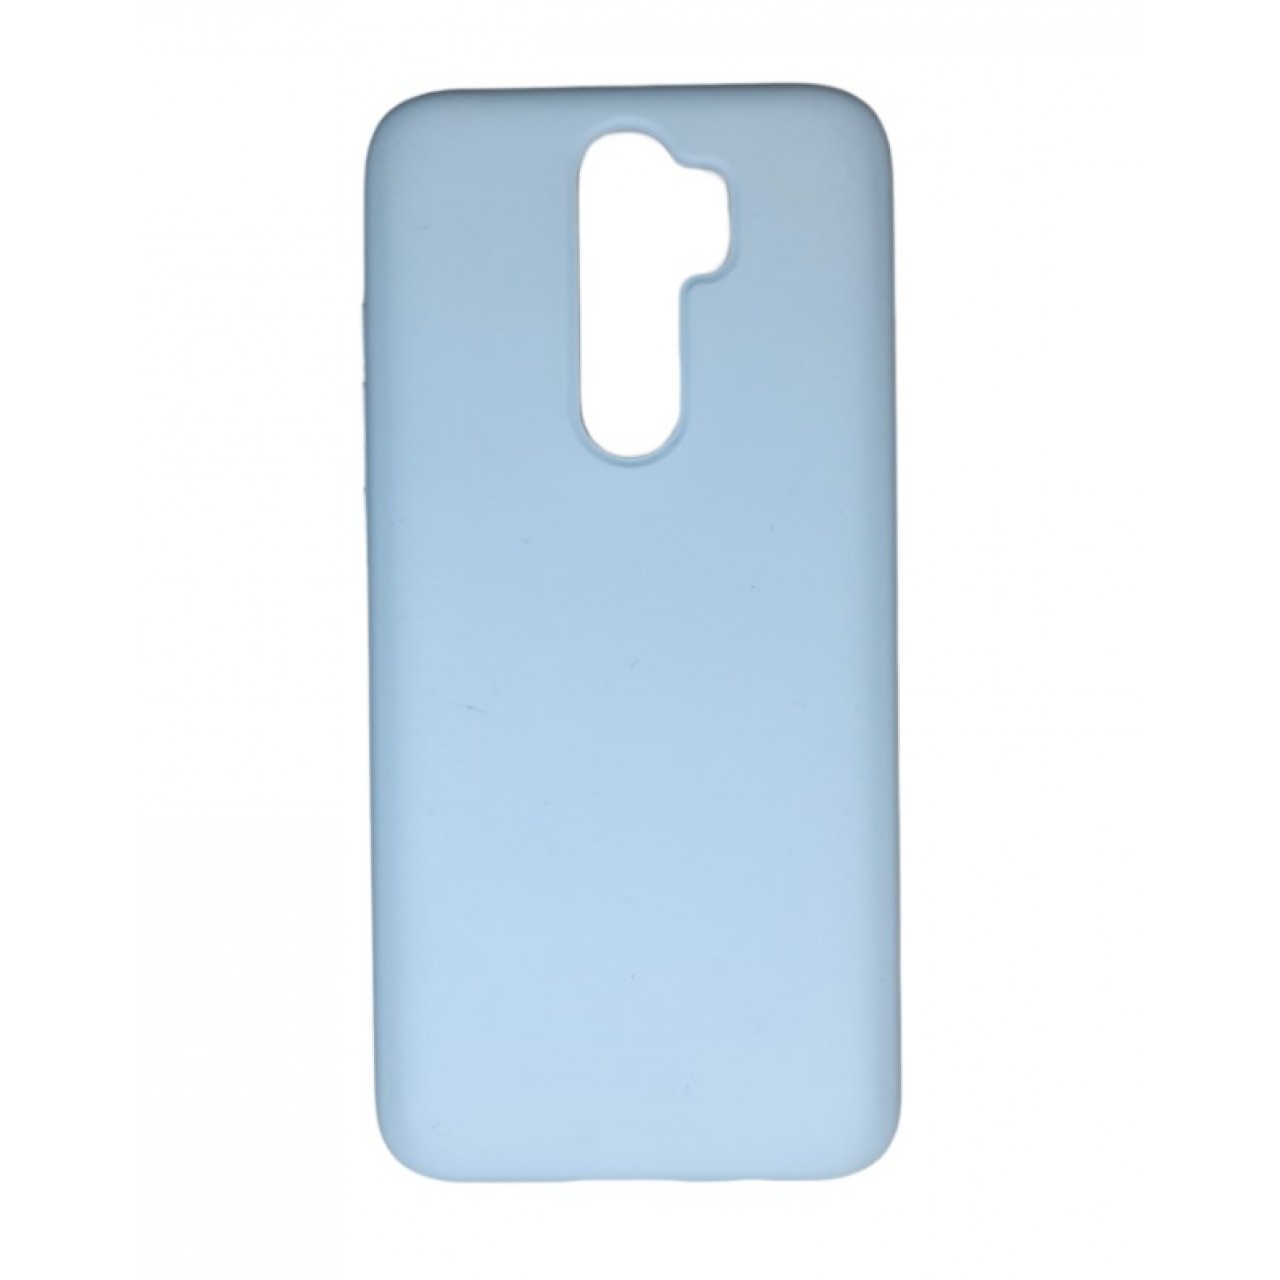 Θήκη Xiaomi Note 8 Pro Silicone soft-touch cover - 5145 - Γαλάζιο - ΟΕΜ